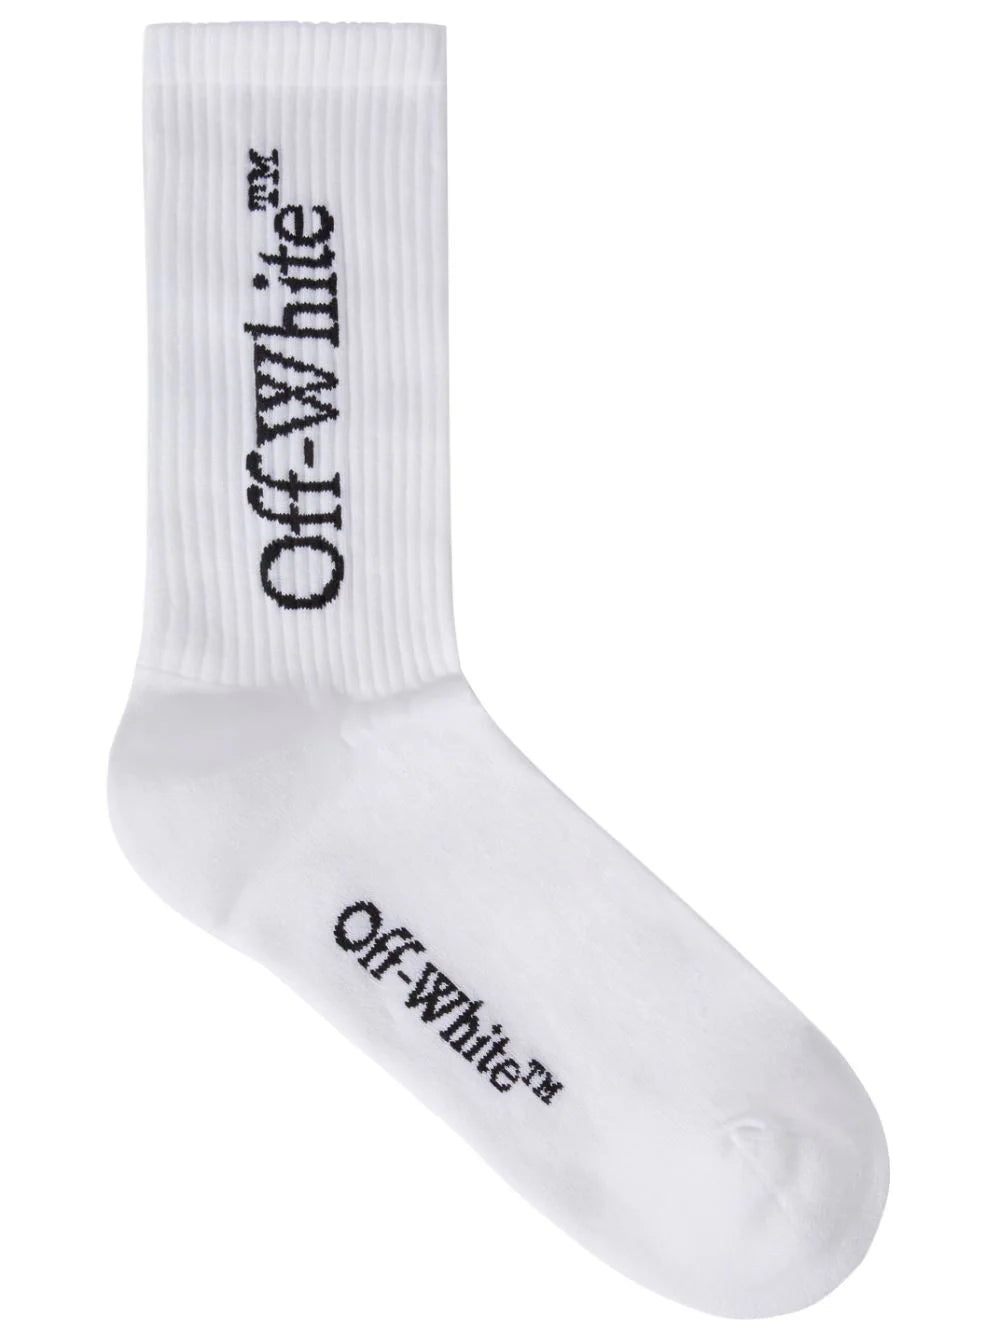 OFF-WHITE MEN Big Logo Mid Calf Socks White/Black - MAISONDEFASHION.COM